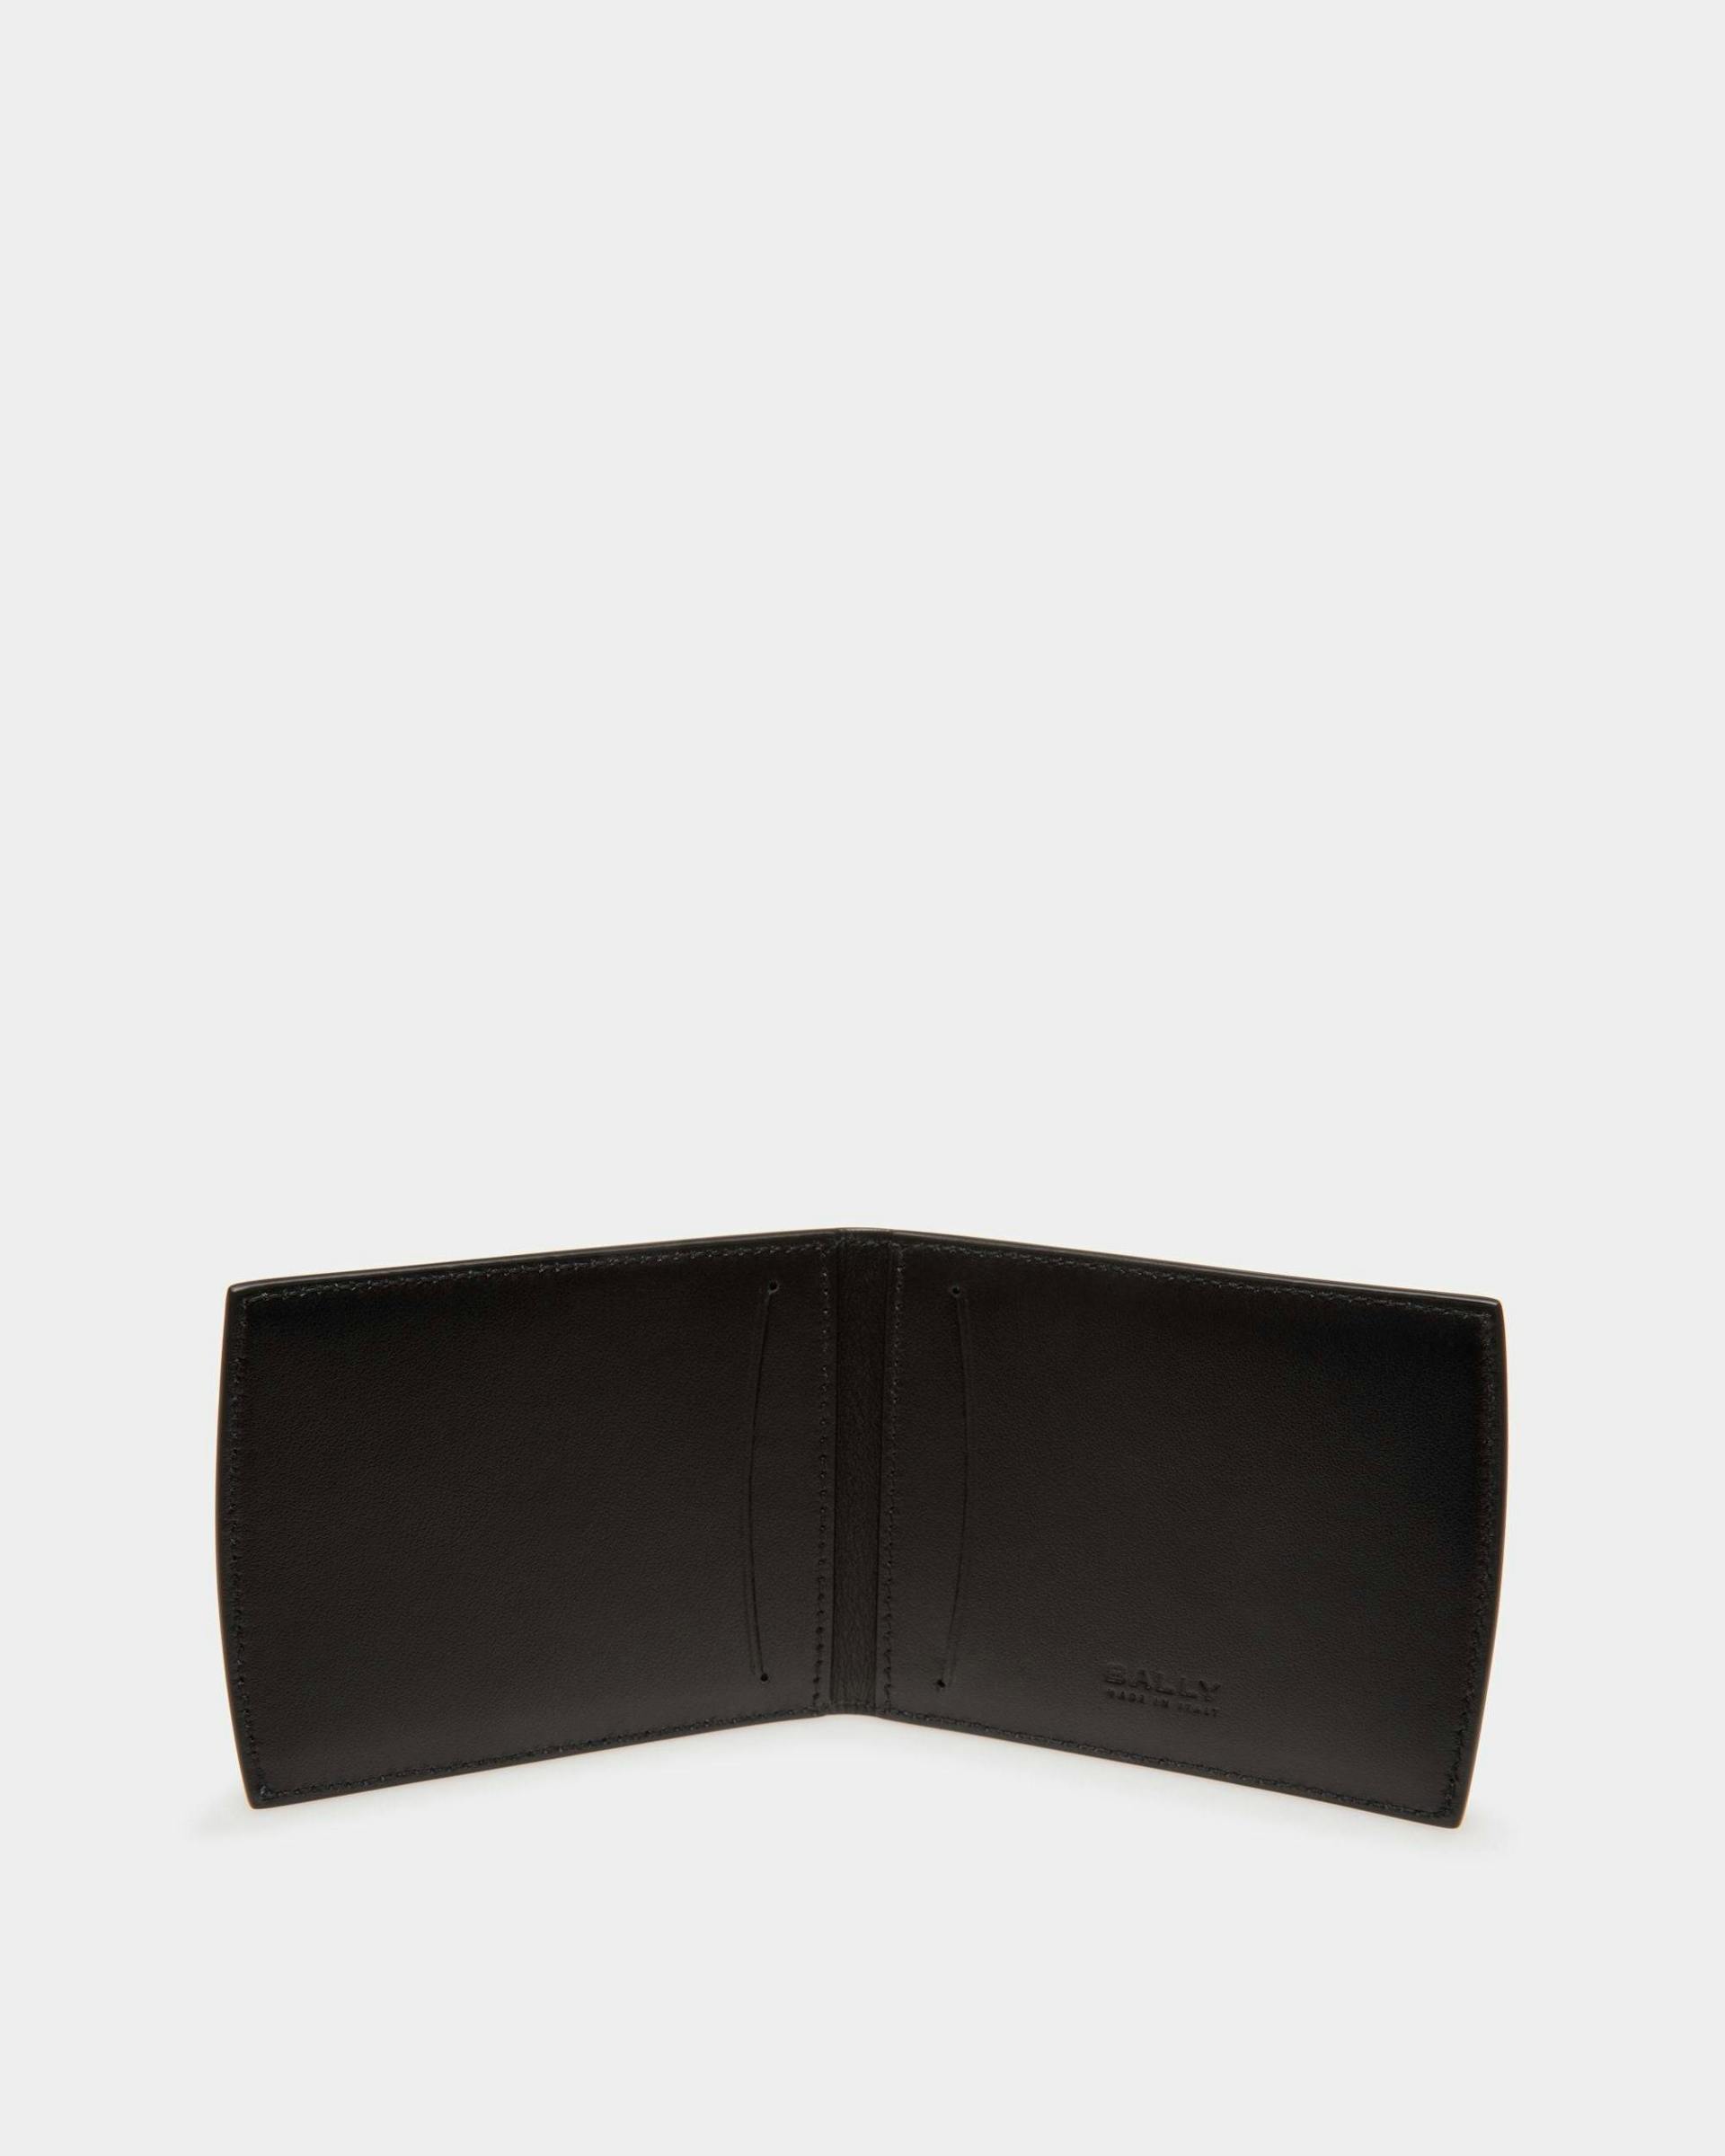 Men's Busy Bally Bifold Wallet in Black Leather | Bally | Still Life Open / Inside